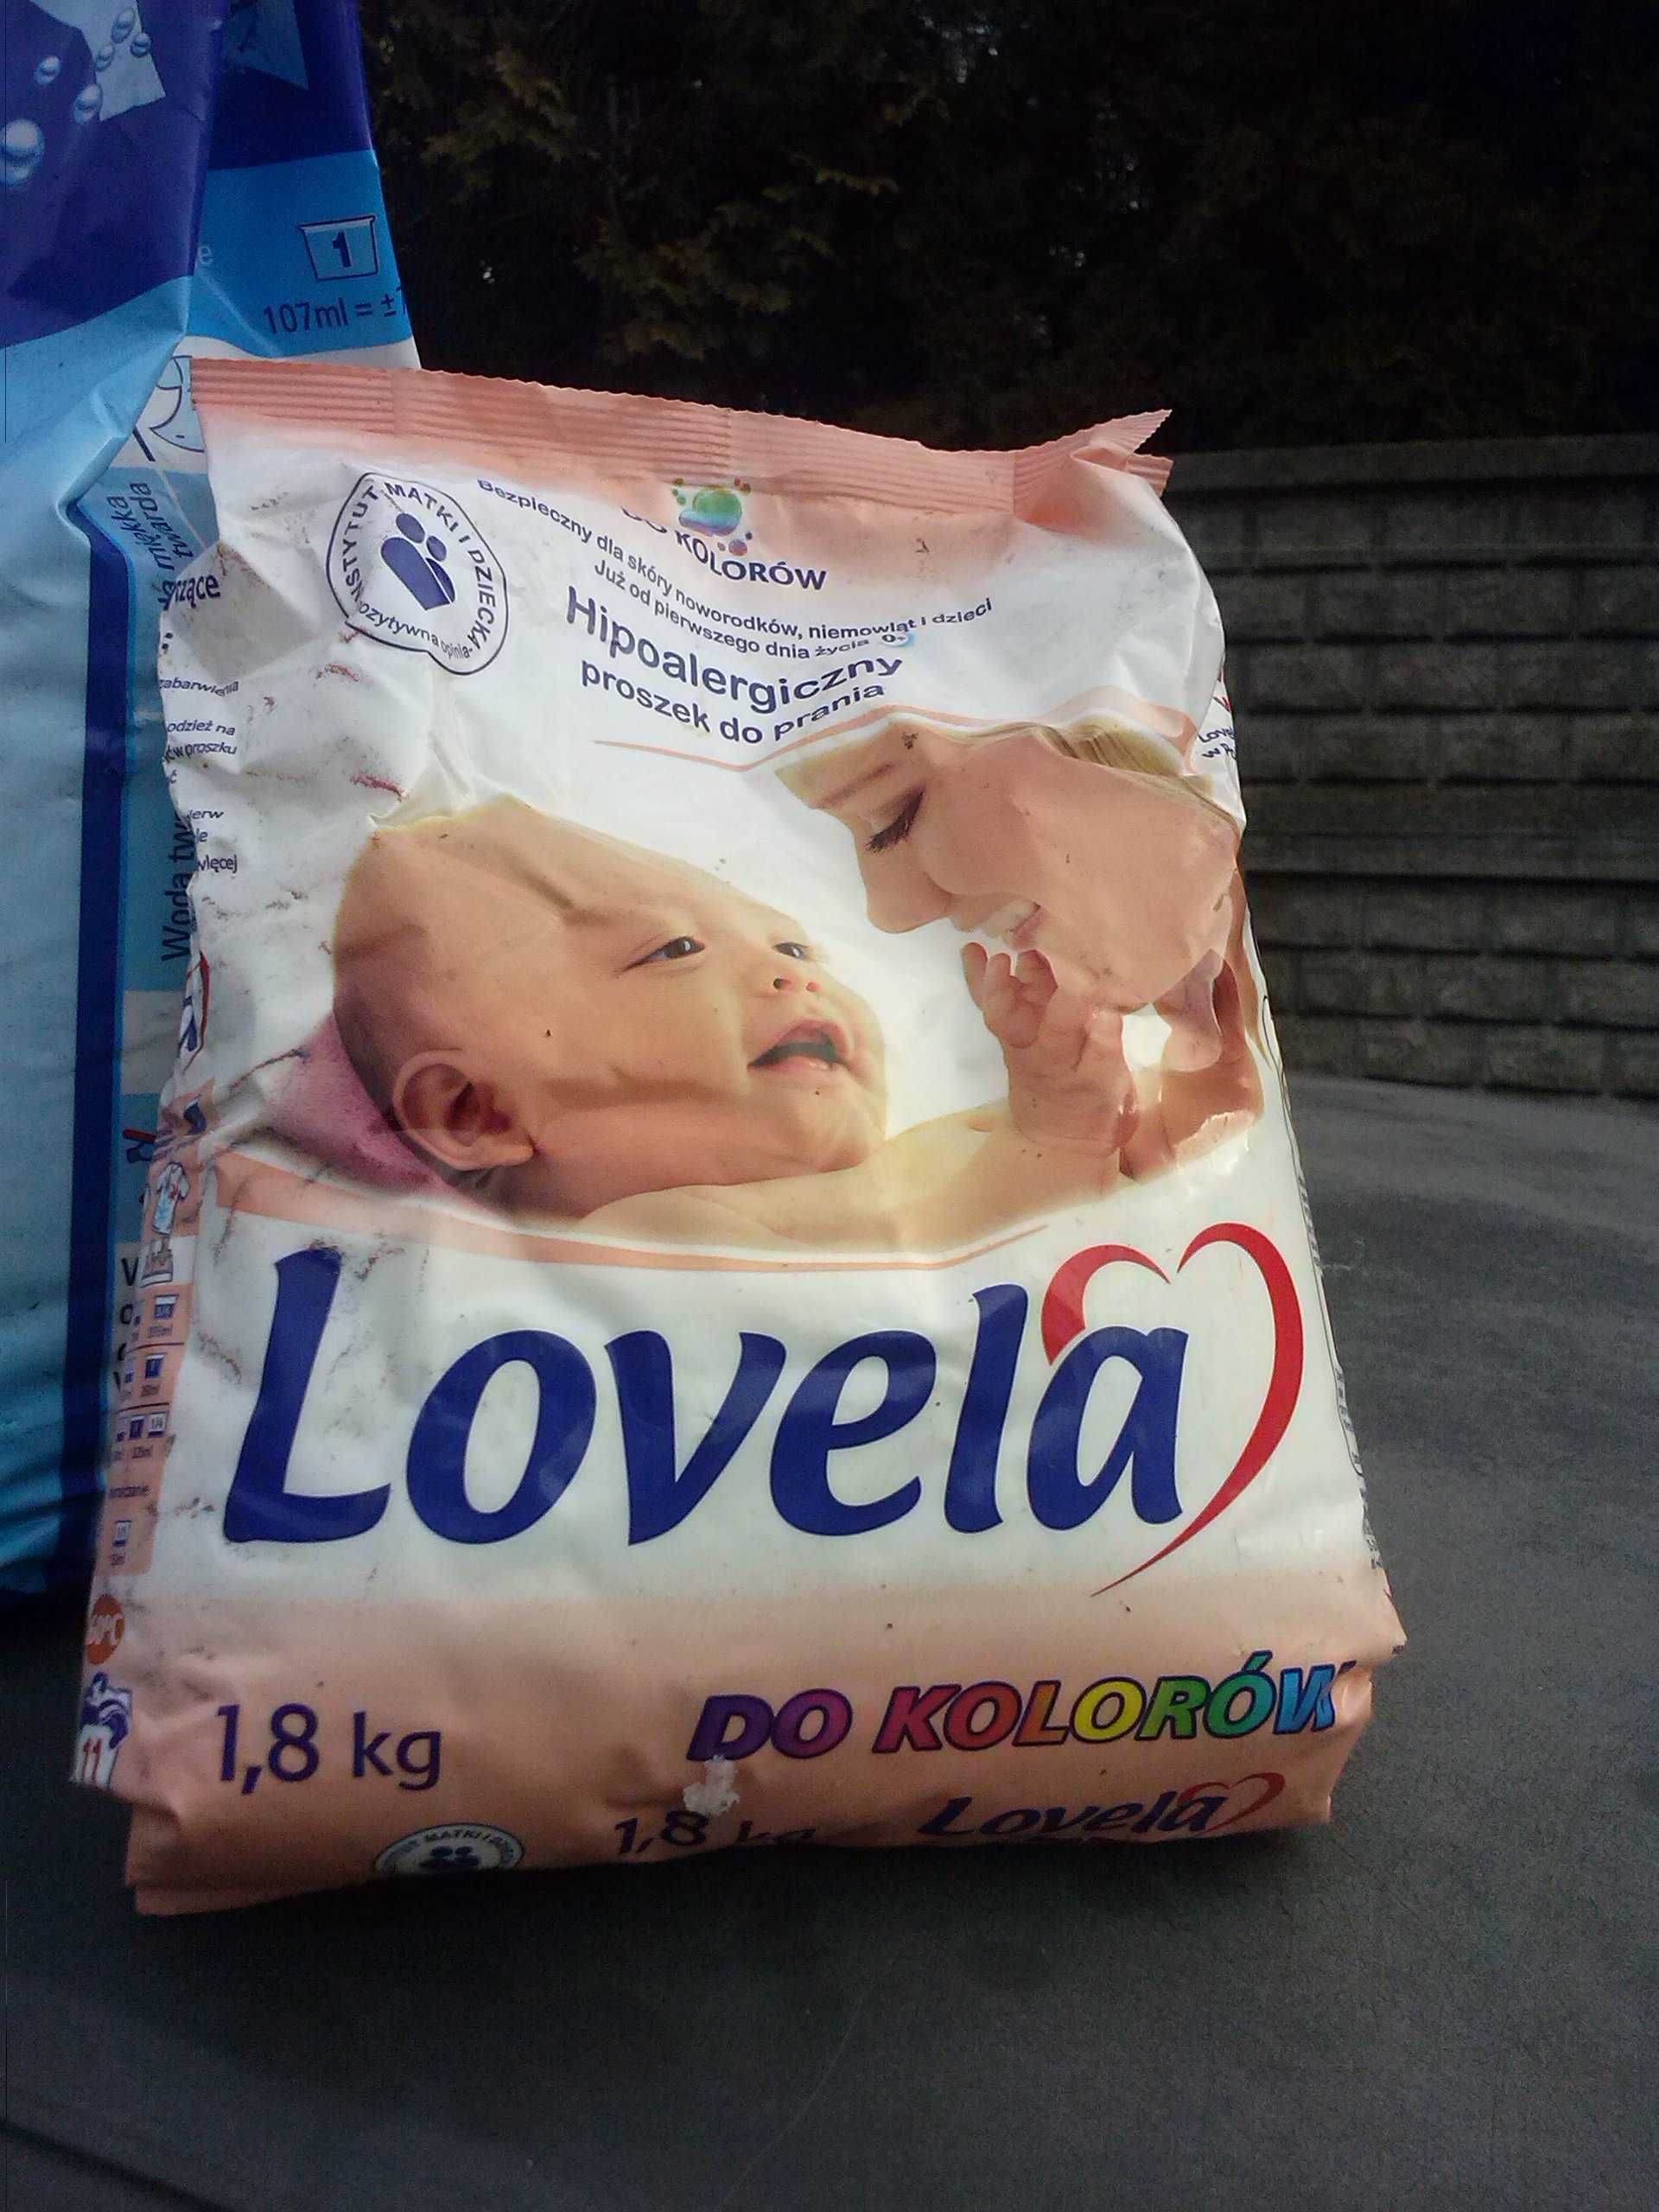 Proszek do prania Lovela, 1.8 kg, 19,90 zł.